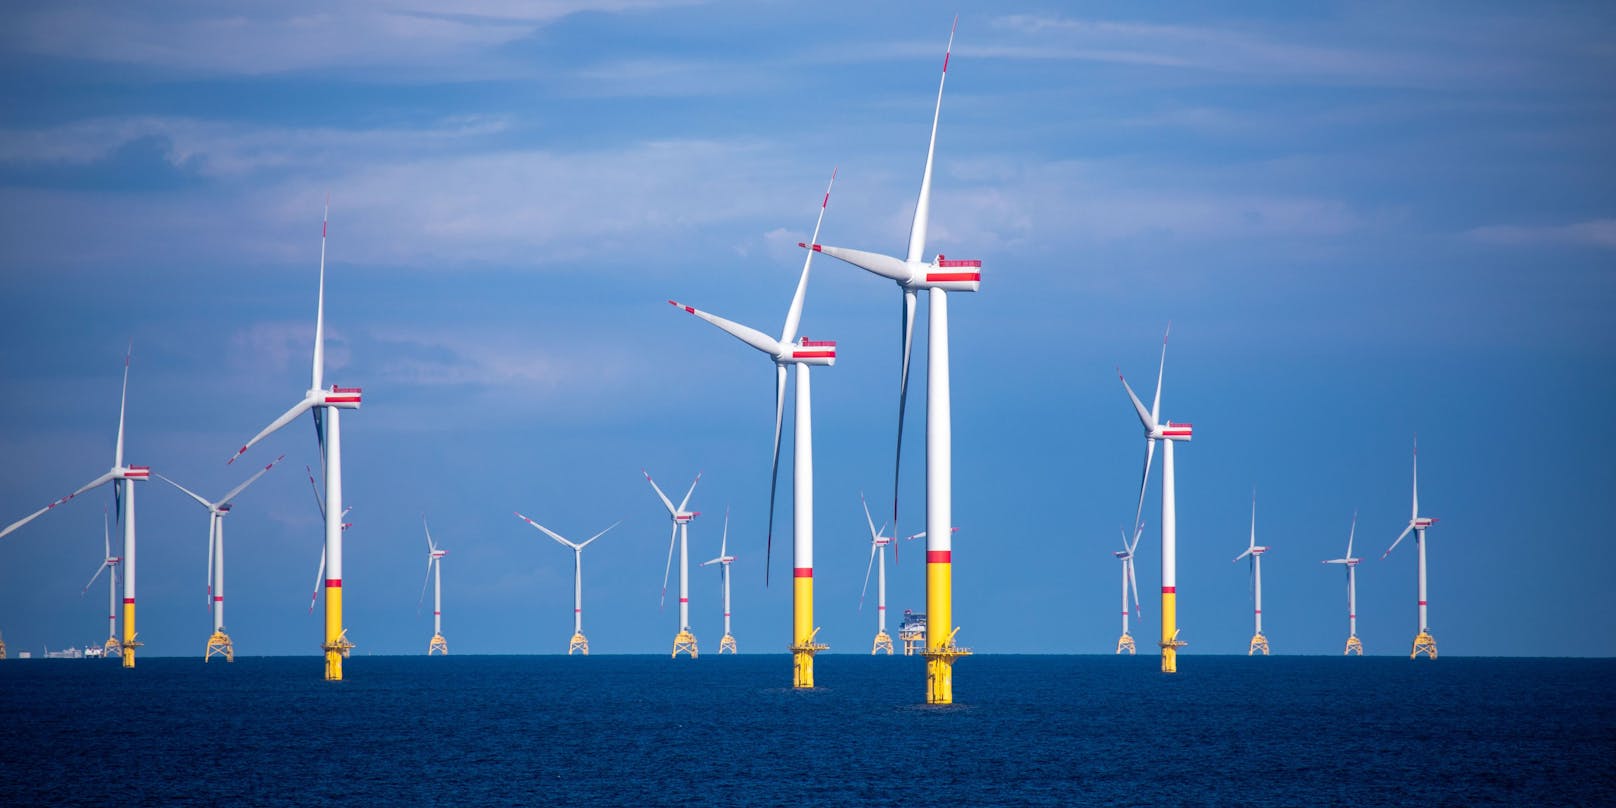 Nach Angaben der Regierung sollen vor New York und New Jersey an der US-Ostküste Gebiete zur Entwicklung von Offshore-Windparks ausgewiesen werden. (Symbolbild)